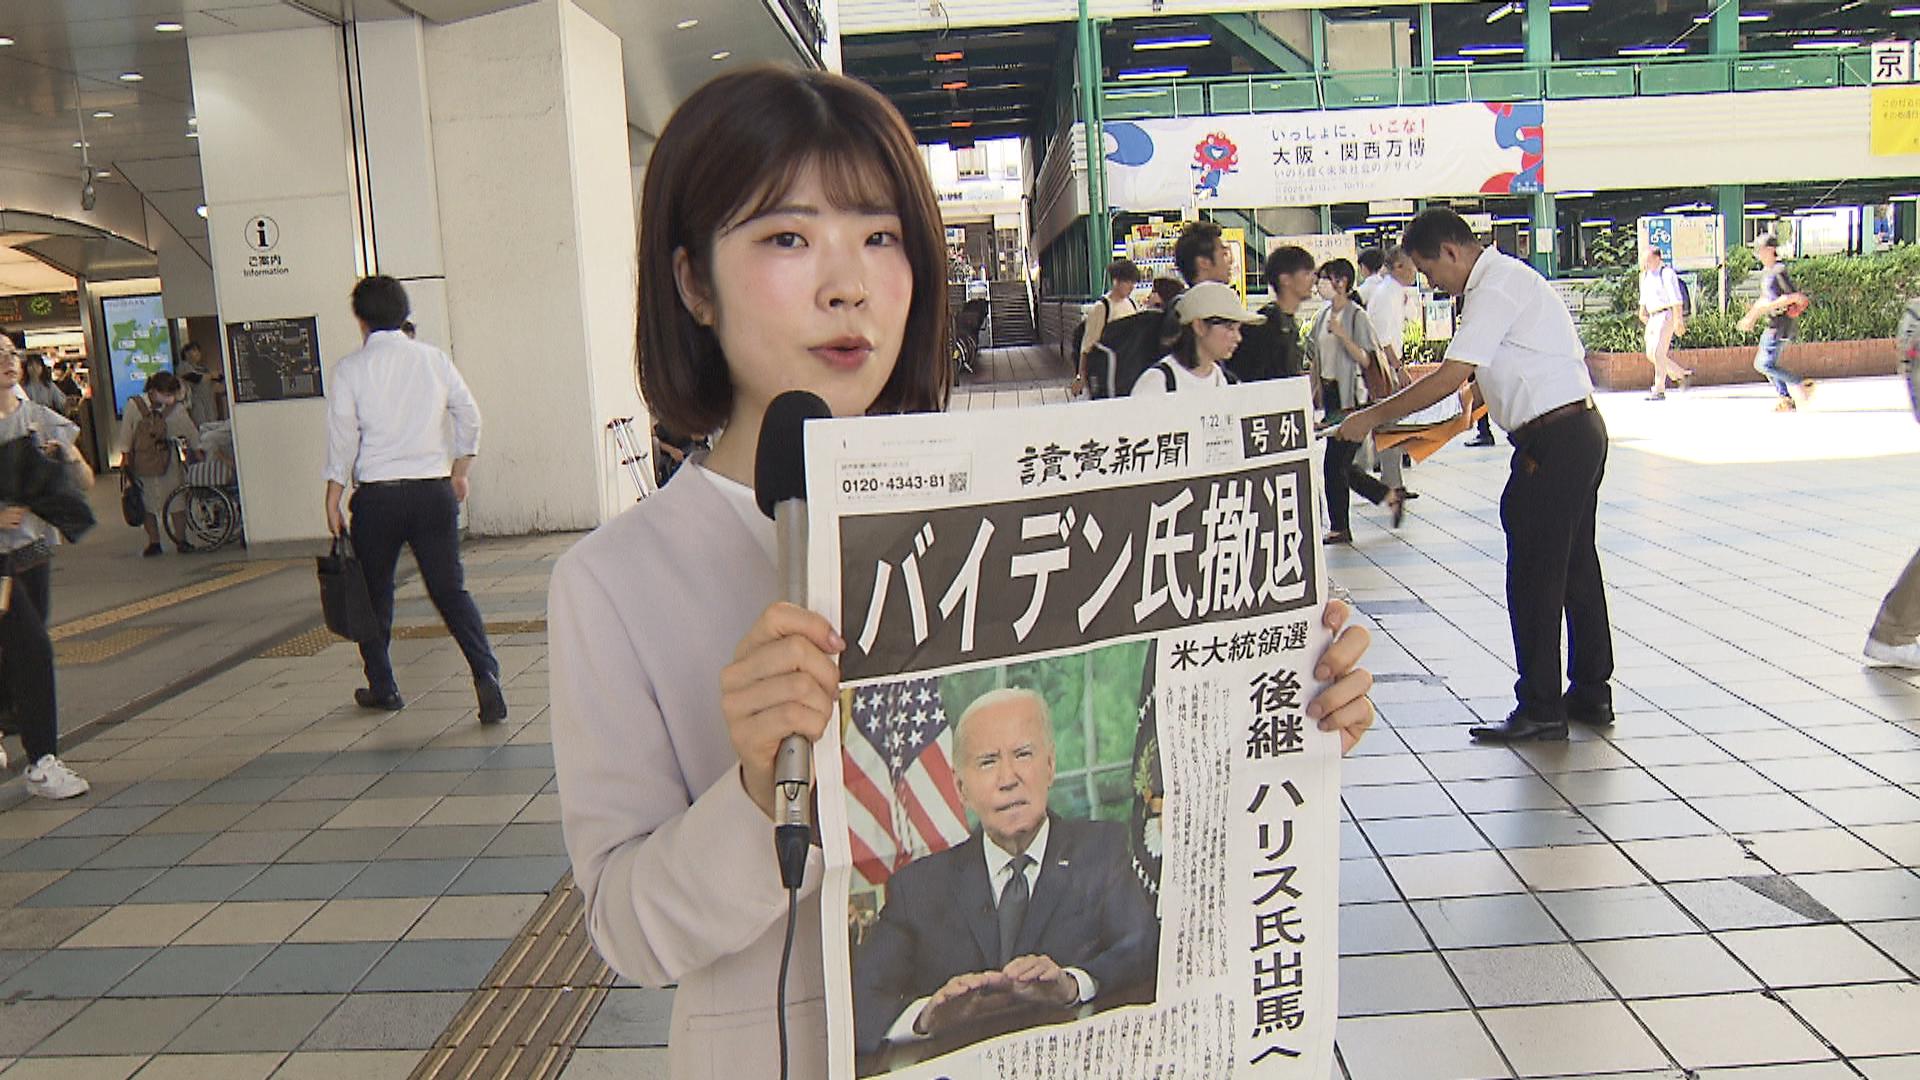 「僕と同年代でヨボヨボ」「もう一人の候補も、もひとつやけど」バイデン大統領の撤退表明で新聞が号外　大阪の辛口反応